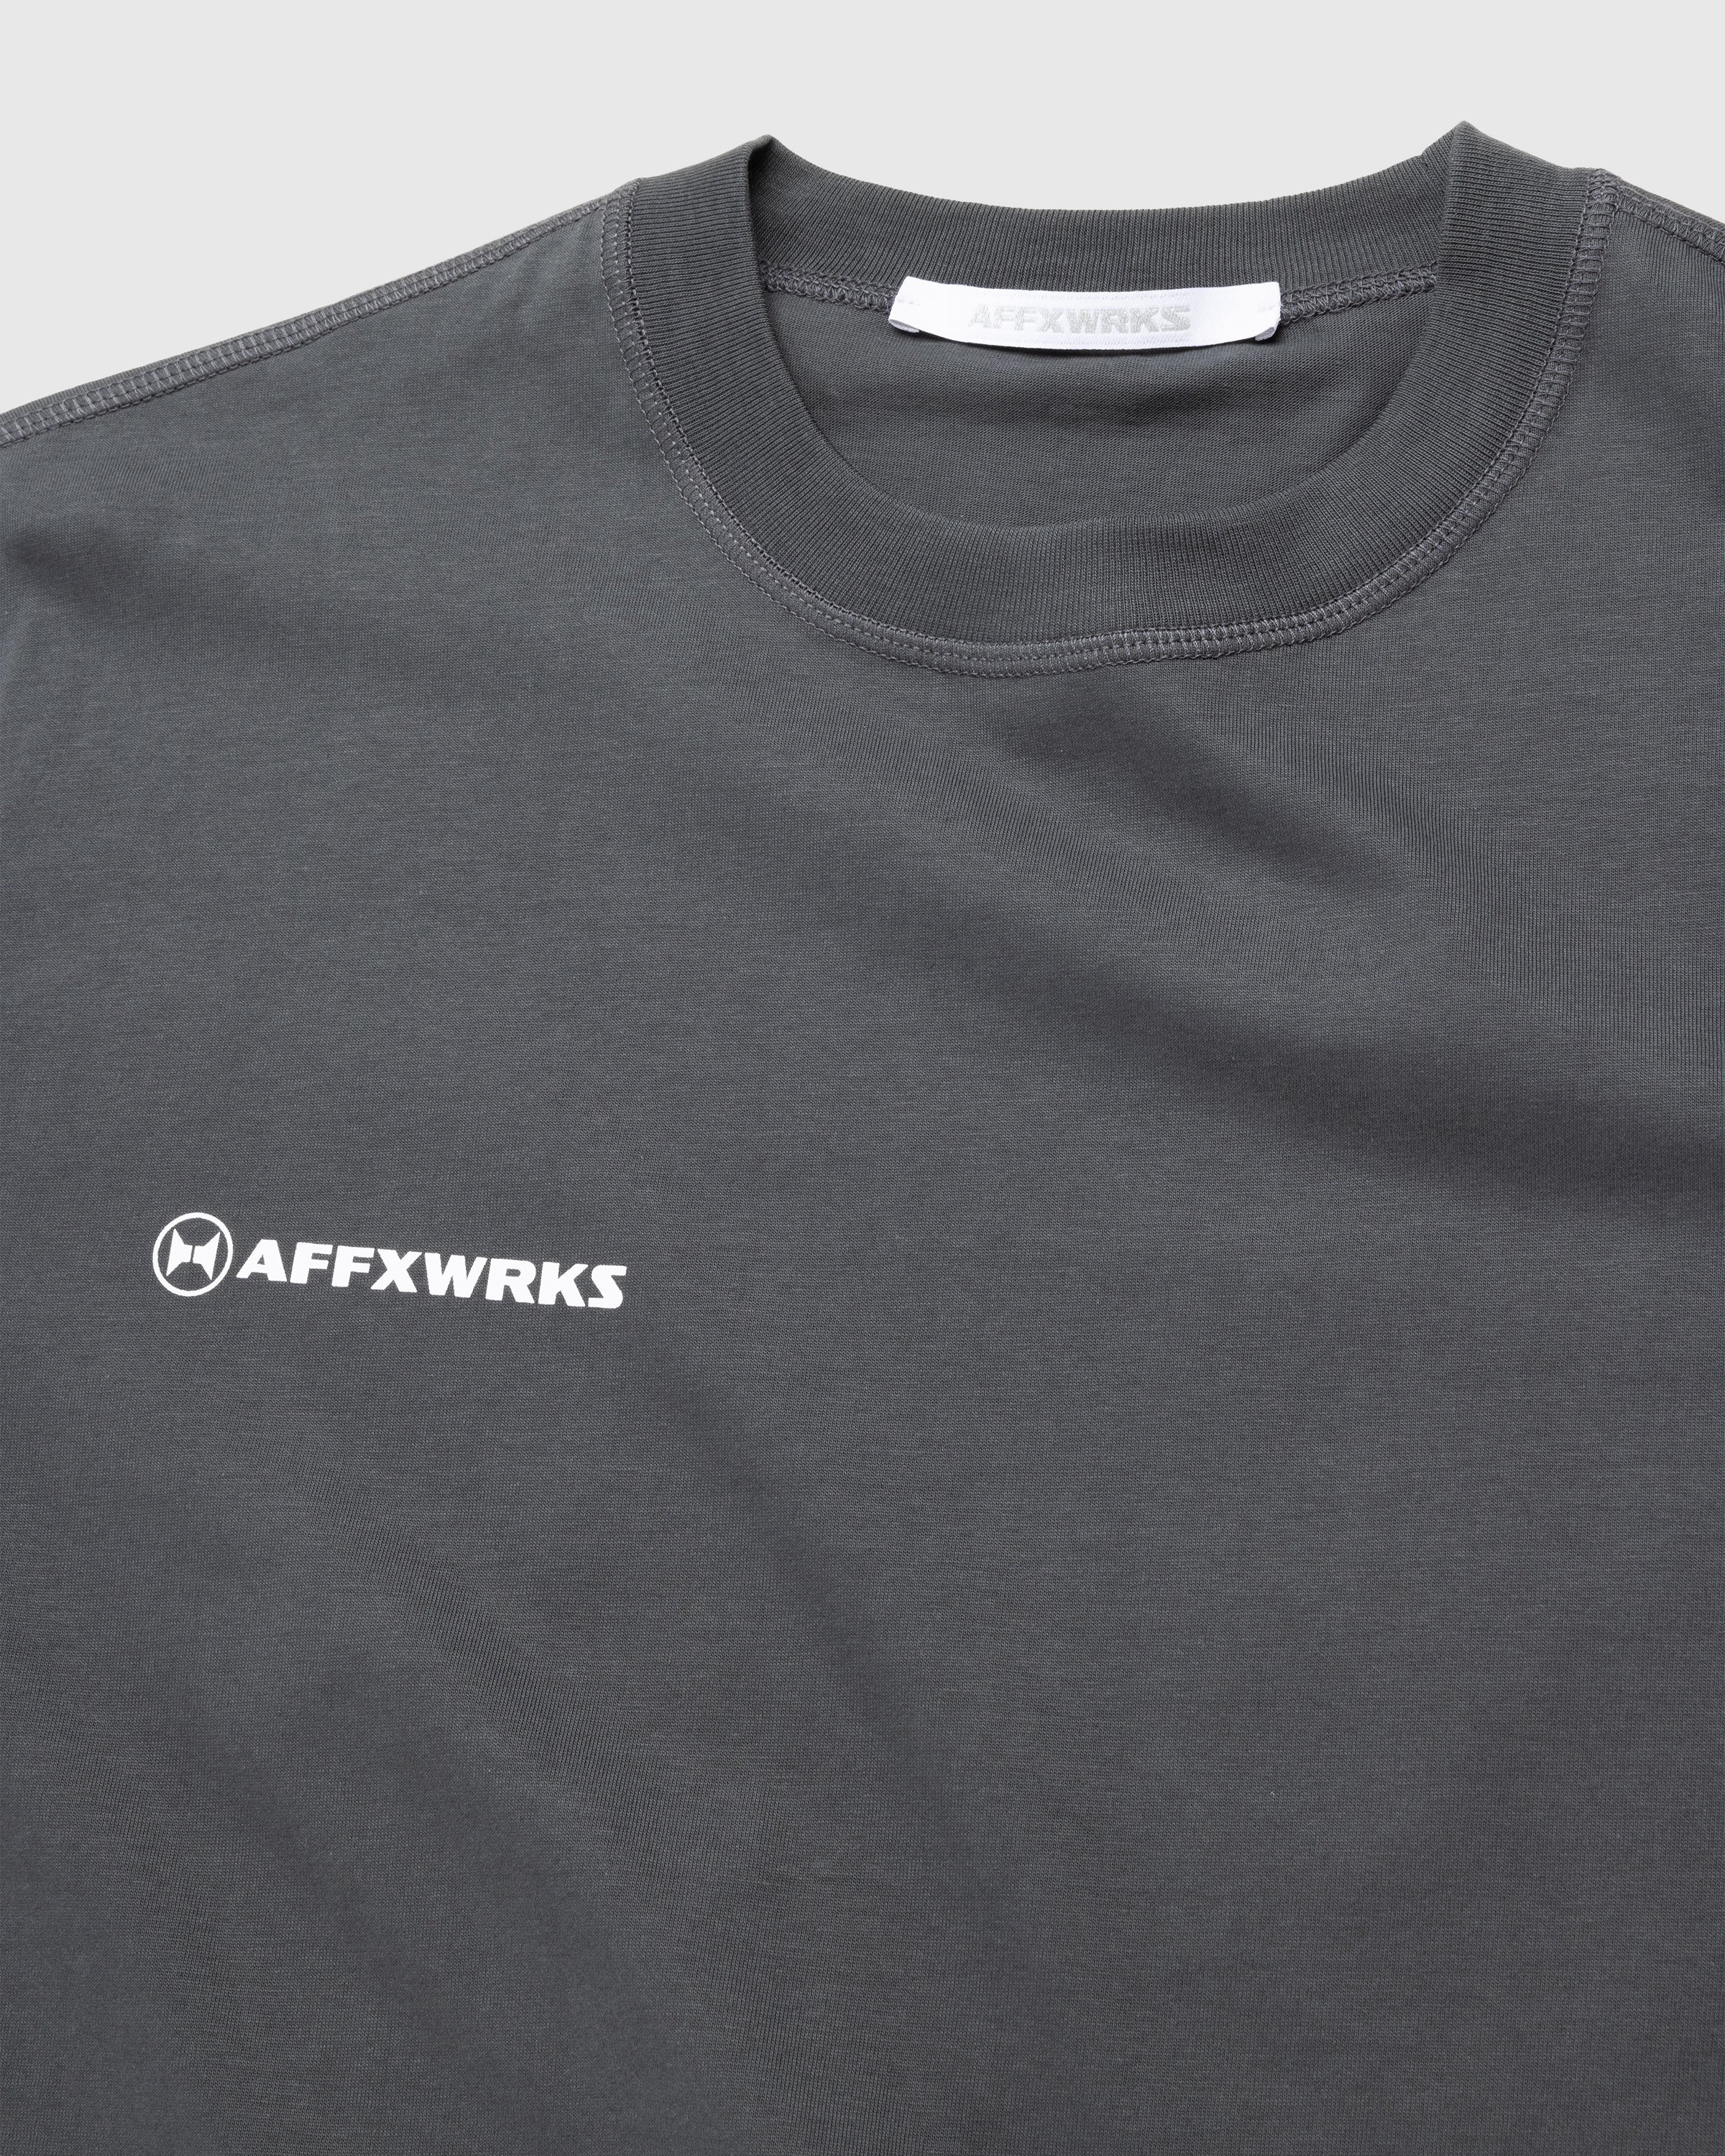 AFFXWRKS - AFFXWRKS T-SHIRT - Clothing - Black - Image 7